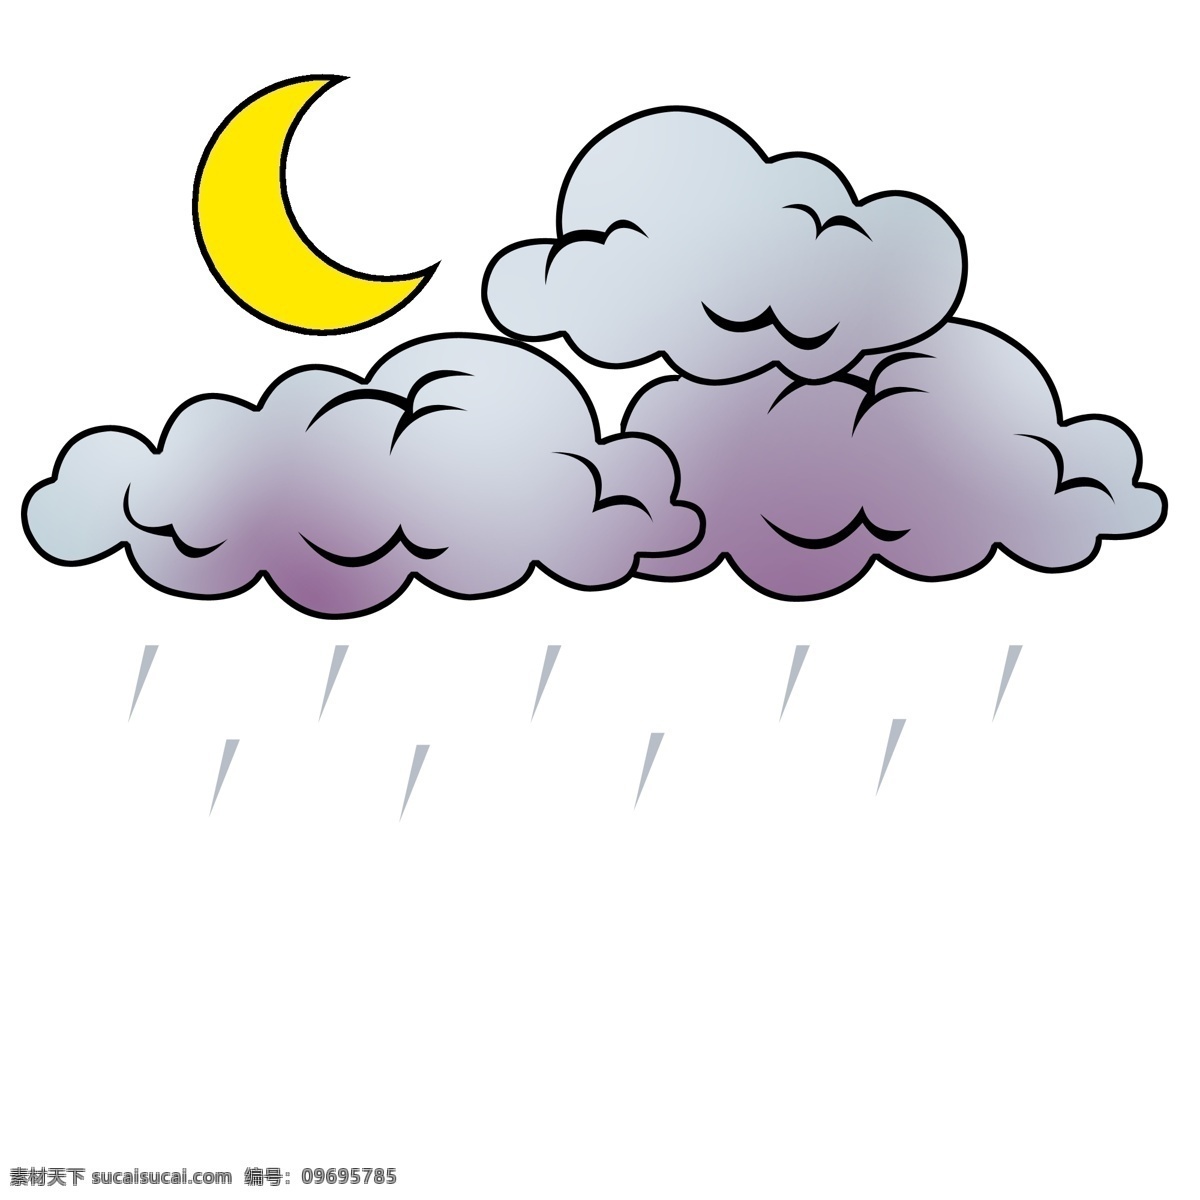 夜间 下雨 卡通 插画 下雨天 夜间下雨 卡通天气插画 天气现象 灰色的云朵 下雨天气 黄色的月亮 天气